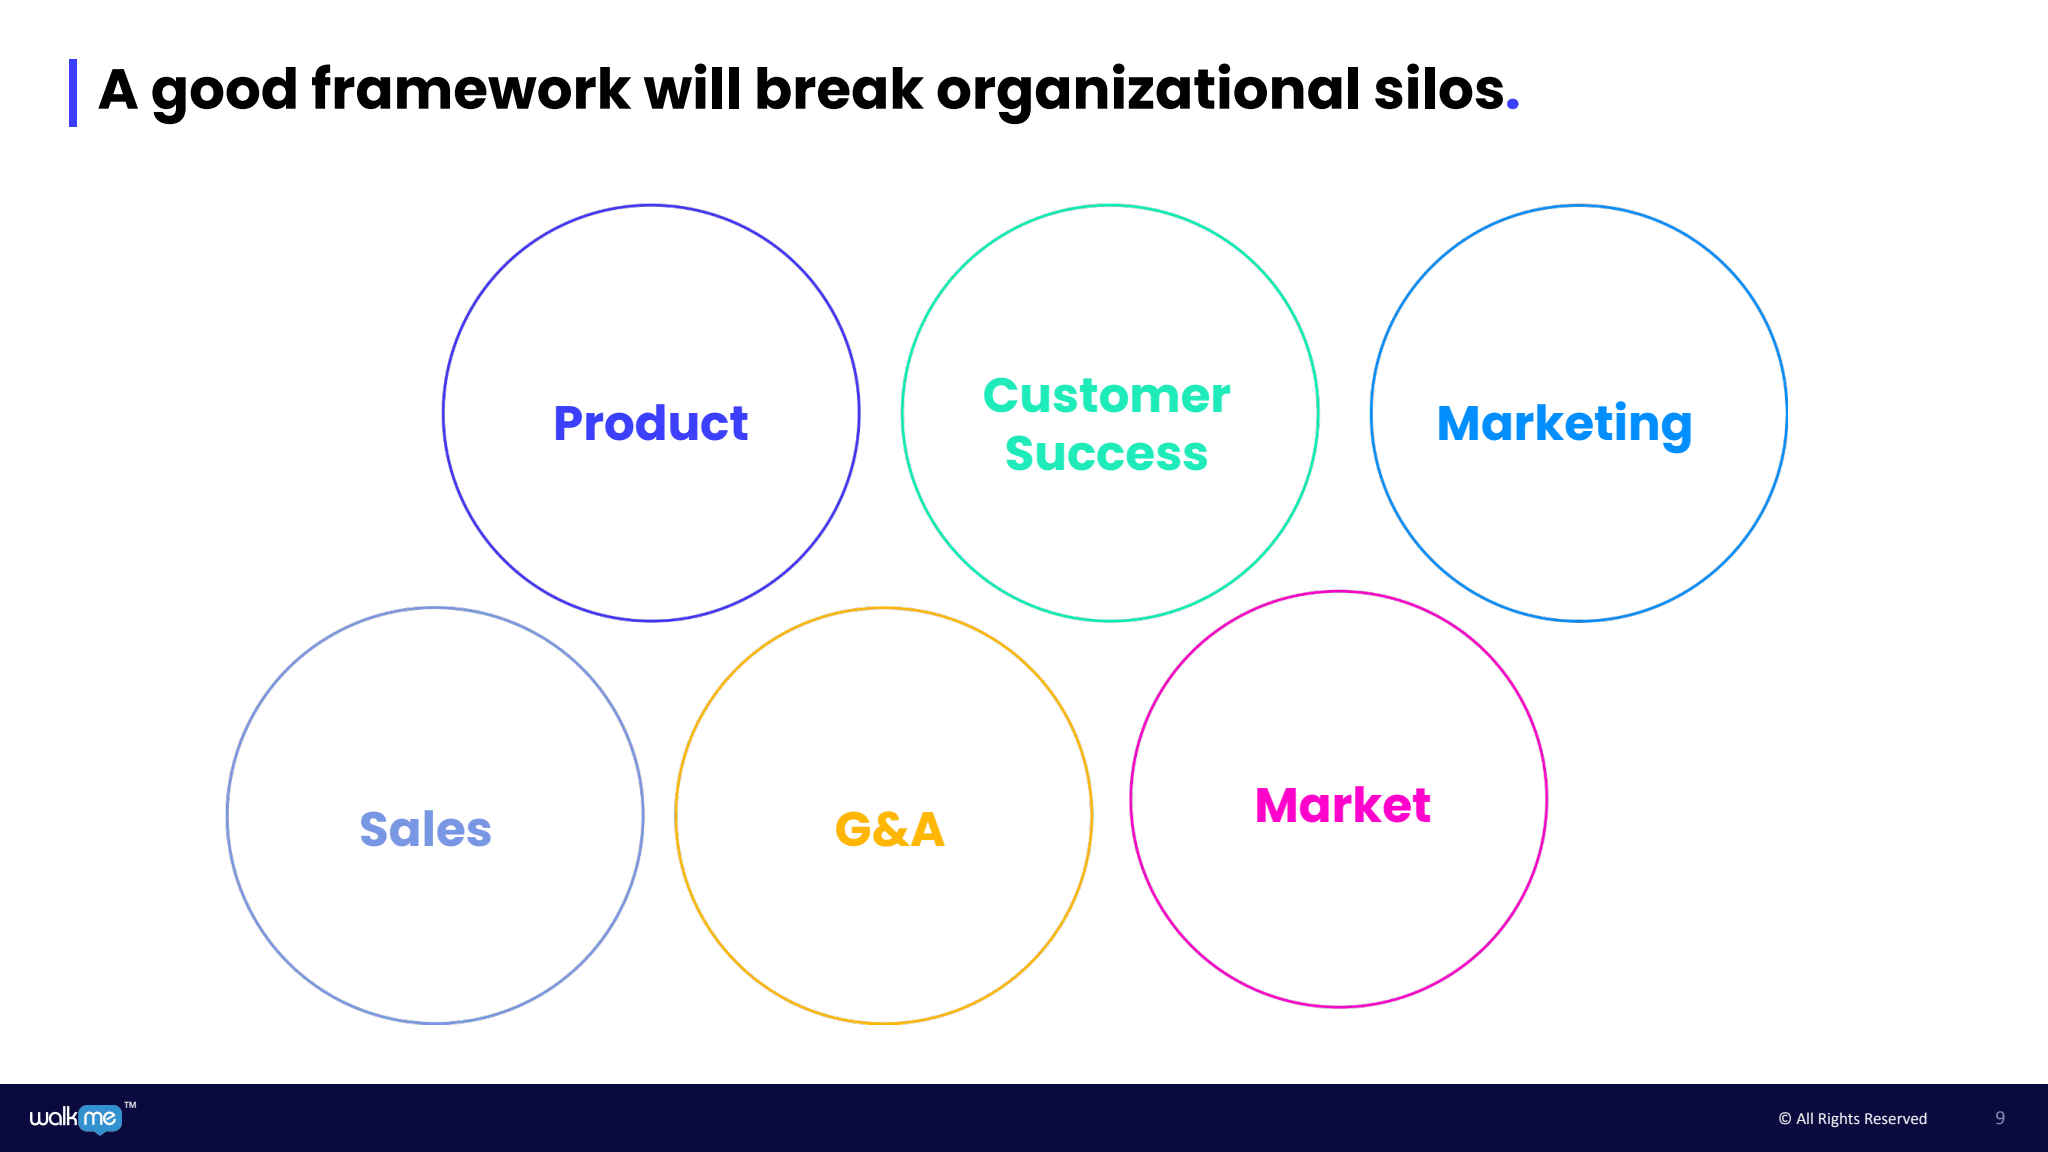 A good framework will break organizational silos